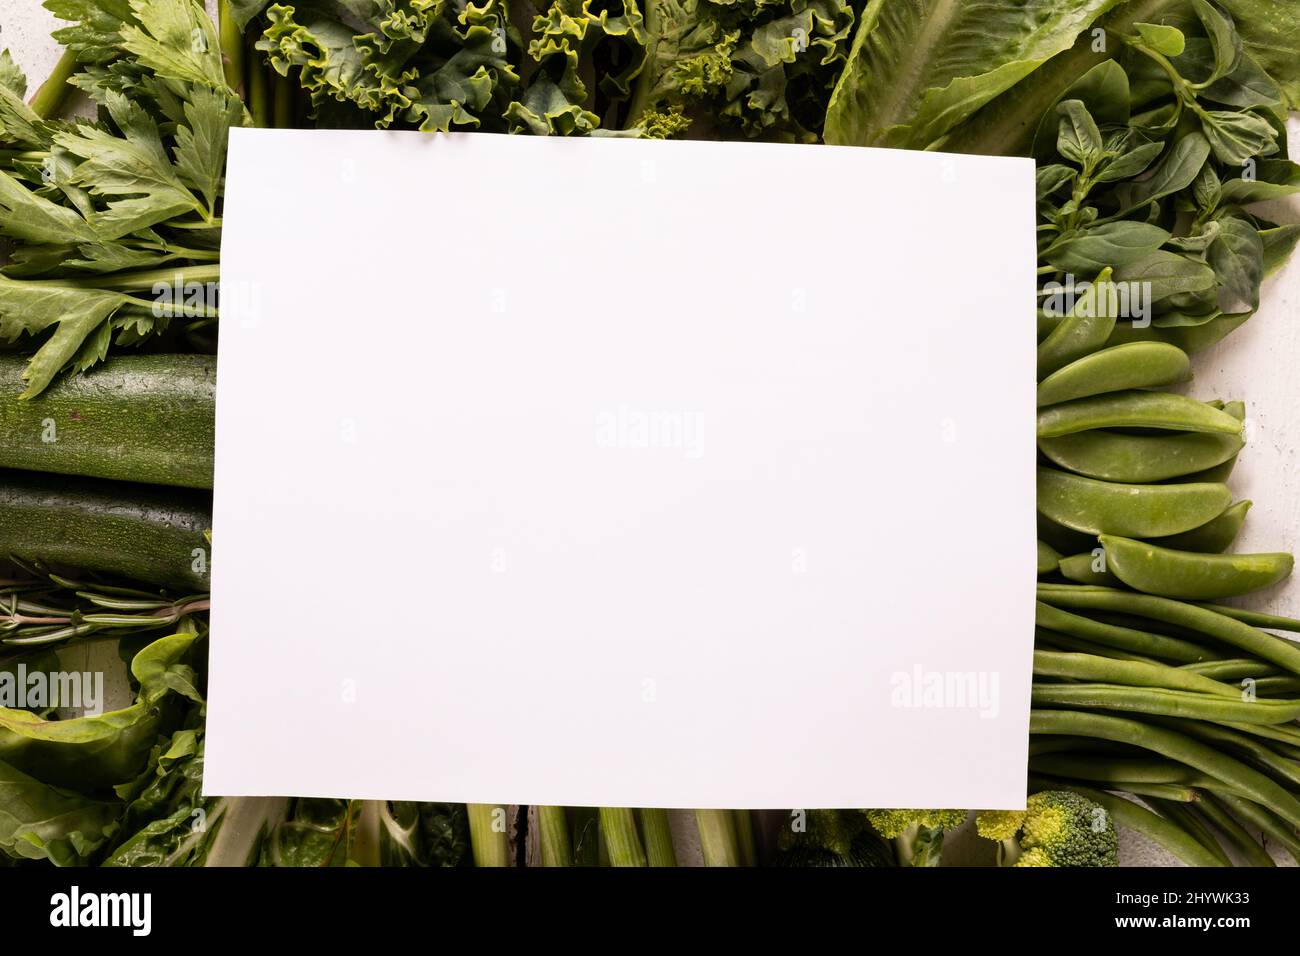 Vista dall'alto di verdure verdi fresche sul tavolo con spazio per la copia Foto Stock